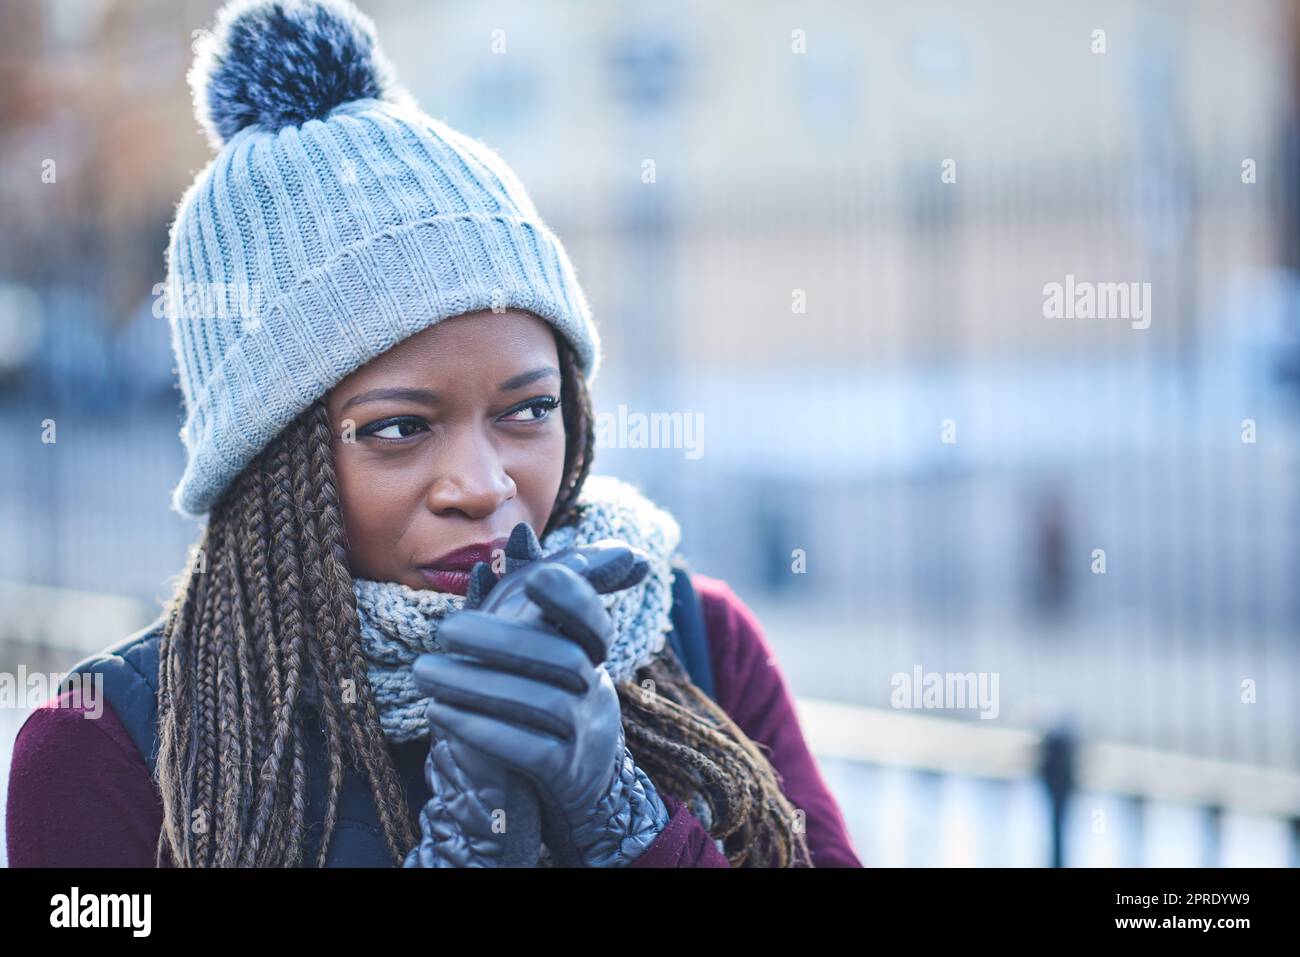 Une jeune femme qui a l'air attentionnés lors d'une journée d'hiver en plein air, elle a été garnie de chaleur lorsque la température baisse. Banque D'Images